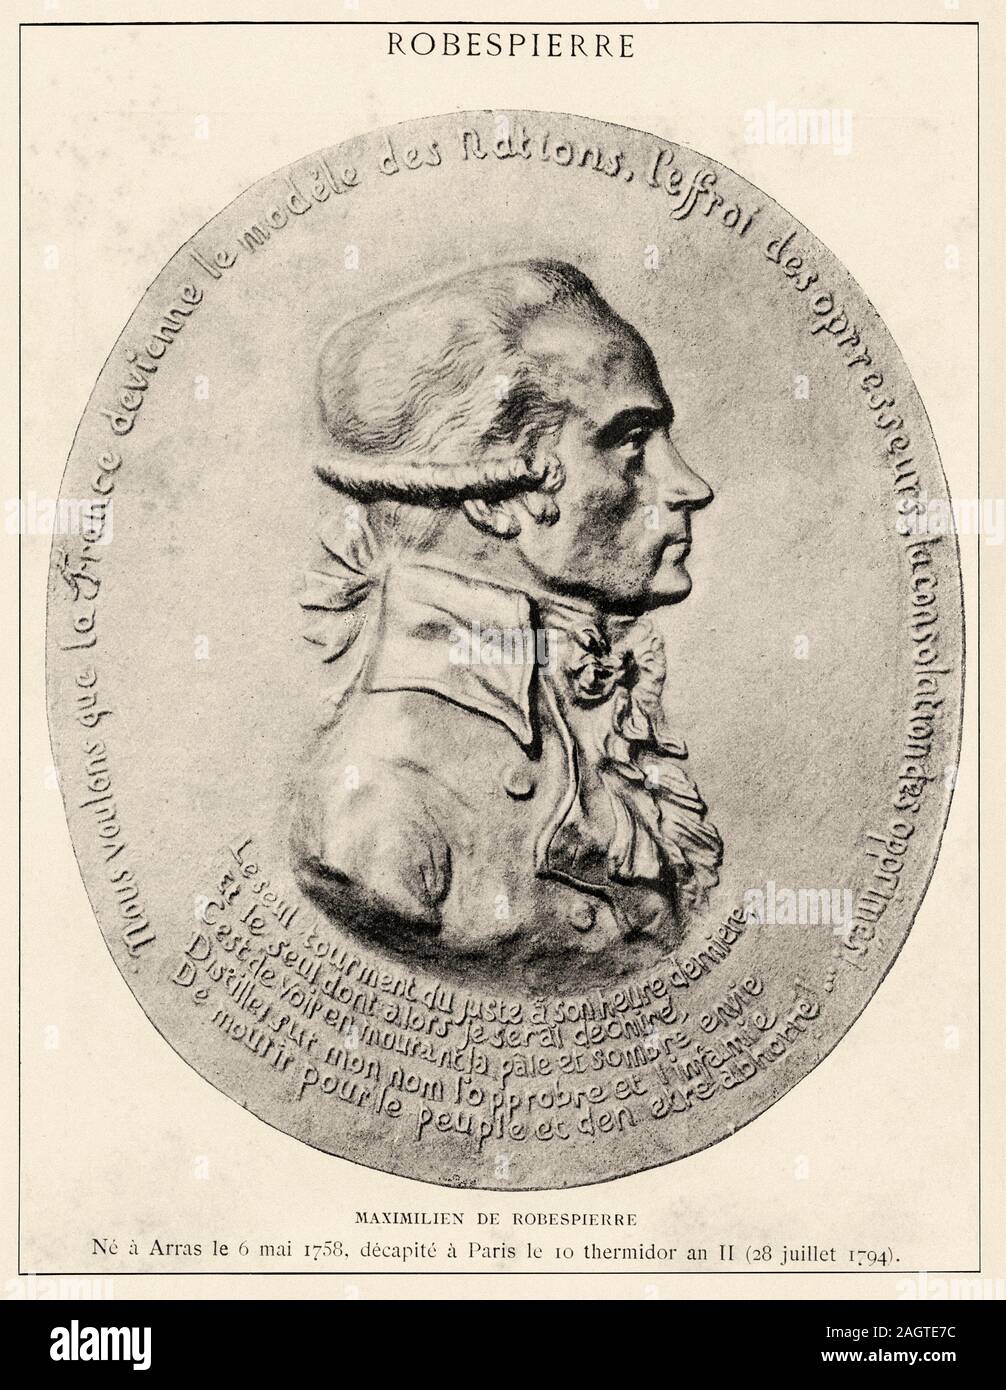 Portrait d'Augustin Robespierre (Arras, 1763-Paris, 1794), homme politique français, membre de la Convention nationale. Révolution française 18ème siècle. Hist Banque D'Images